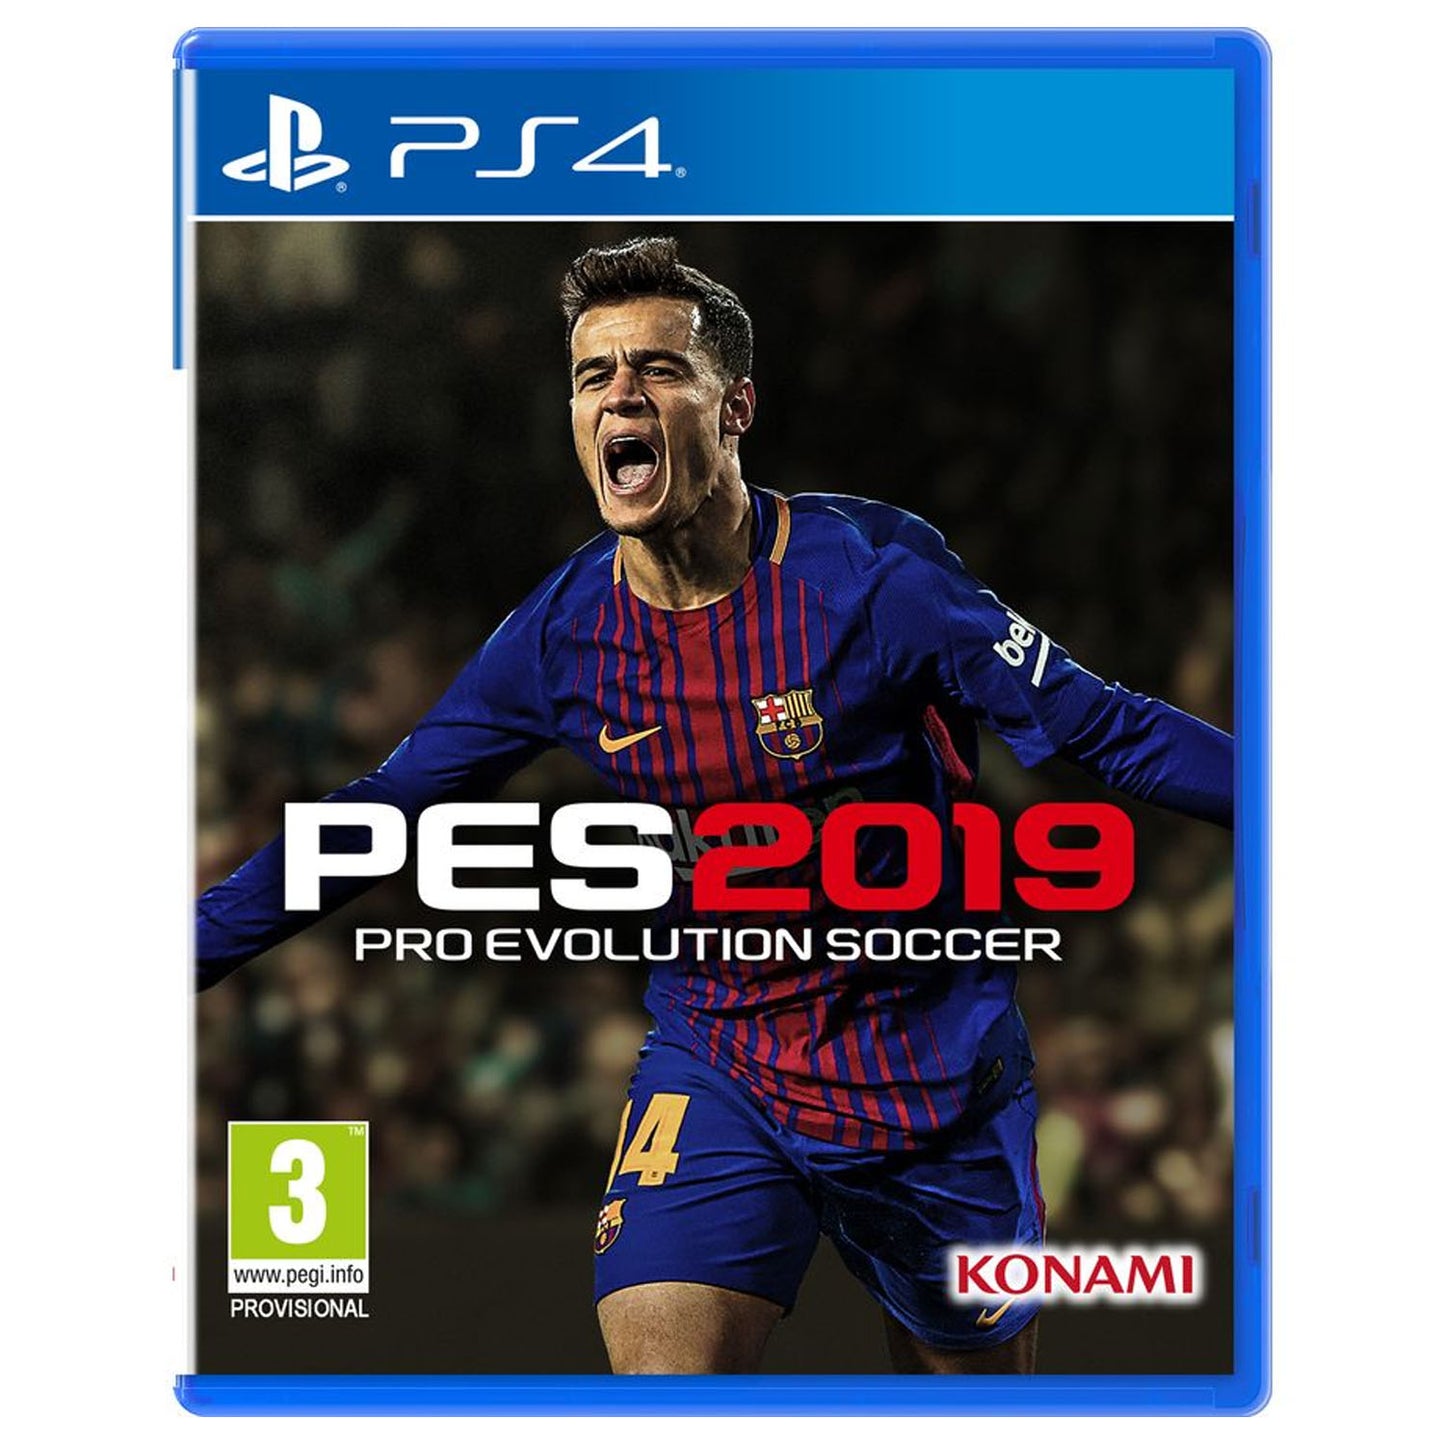 Pro Evolution Soccer (PES) 2019 For PS4